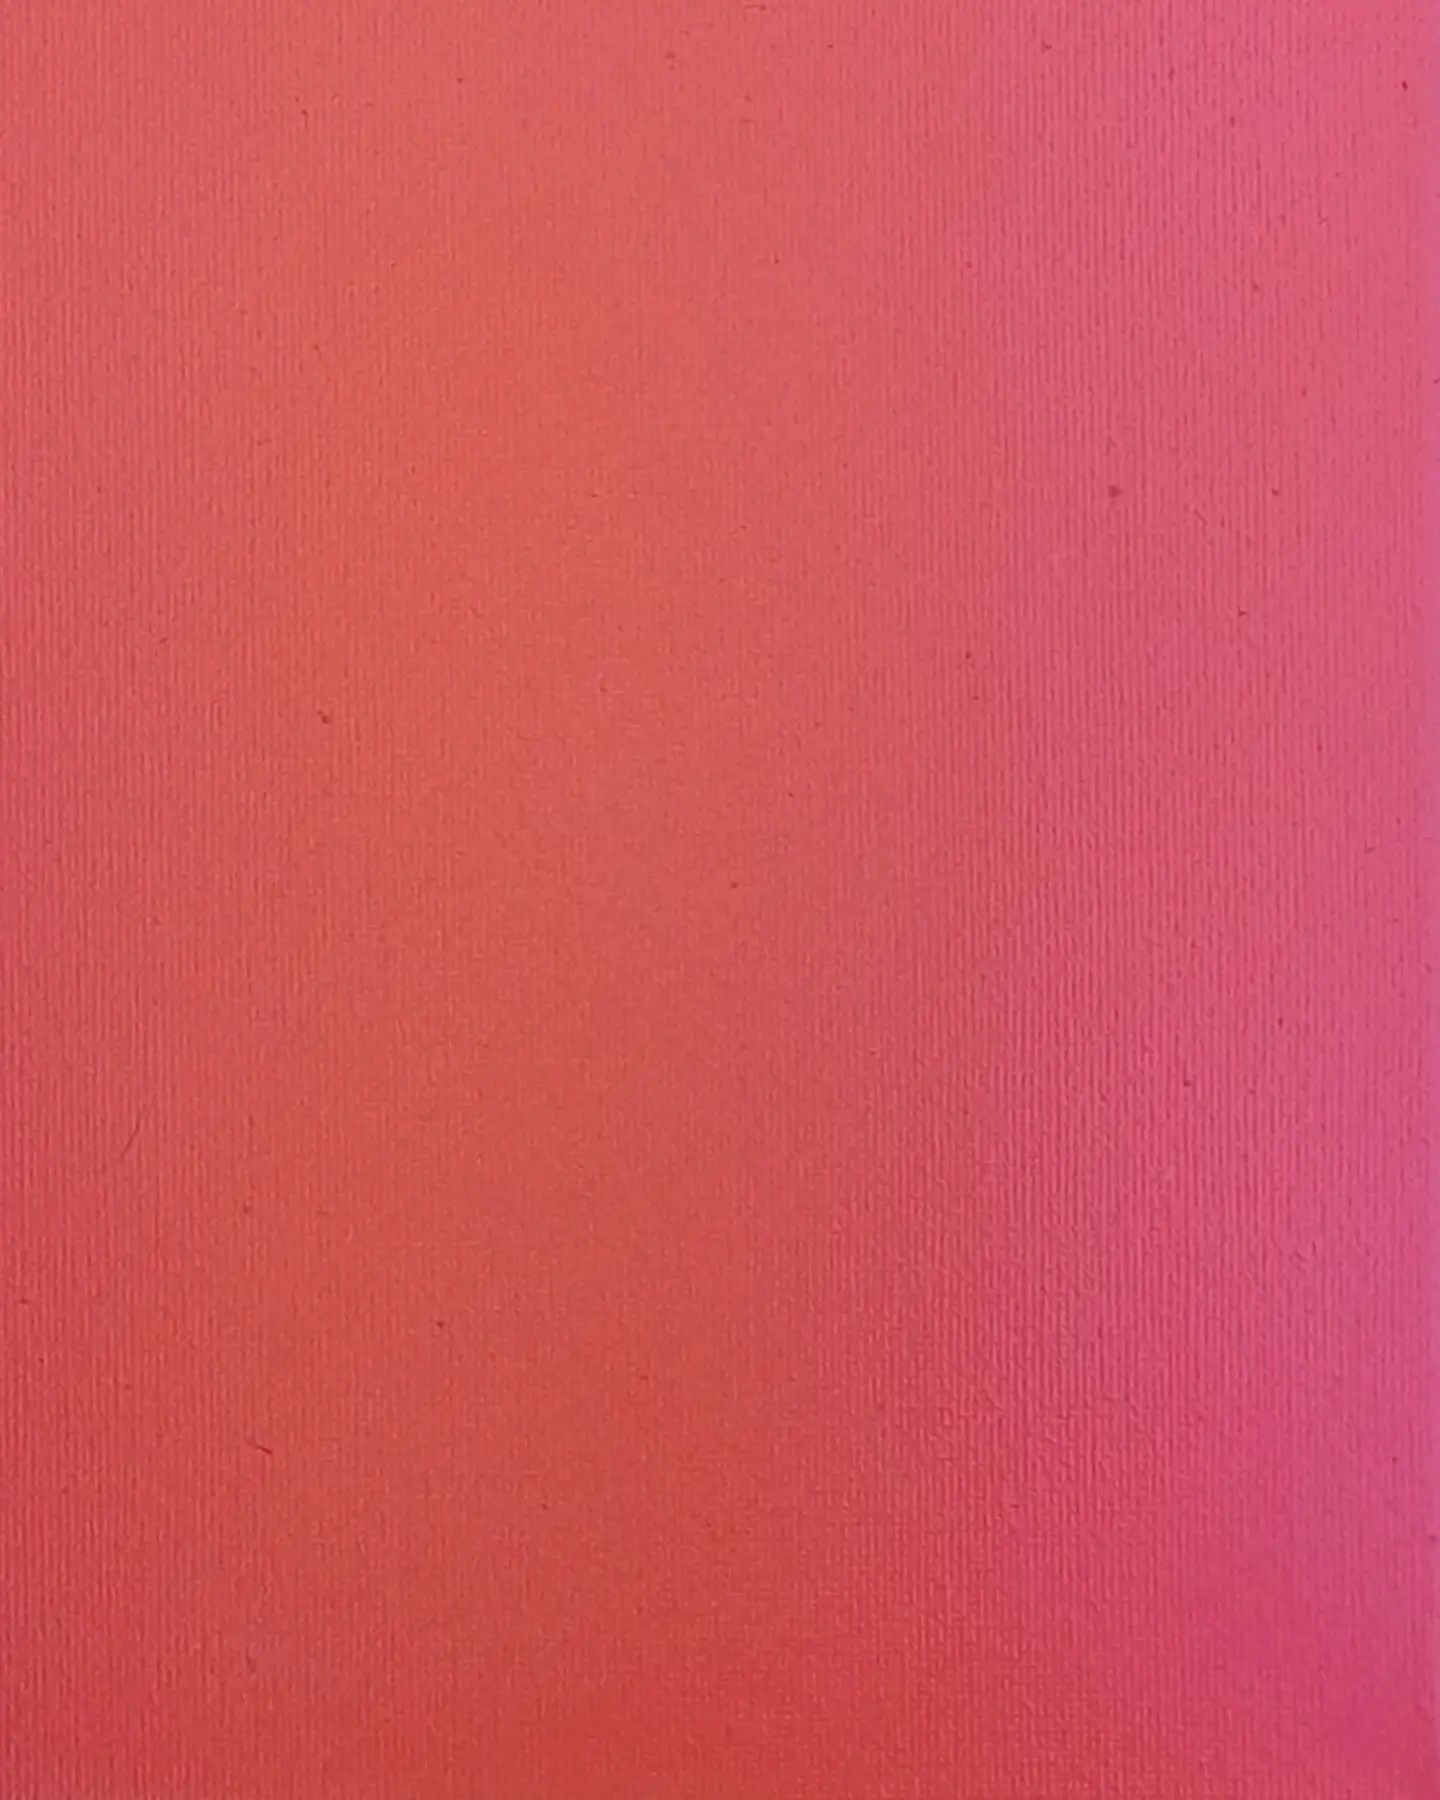 Obraz color field painting op-art sfumato rózowy